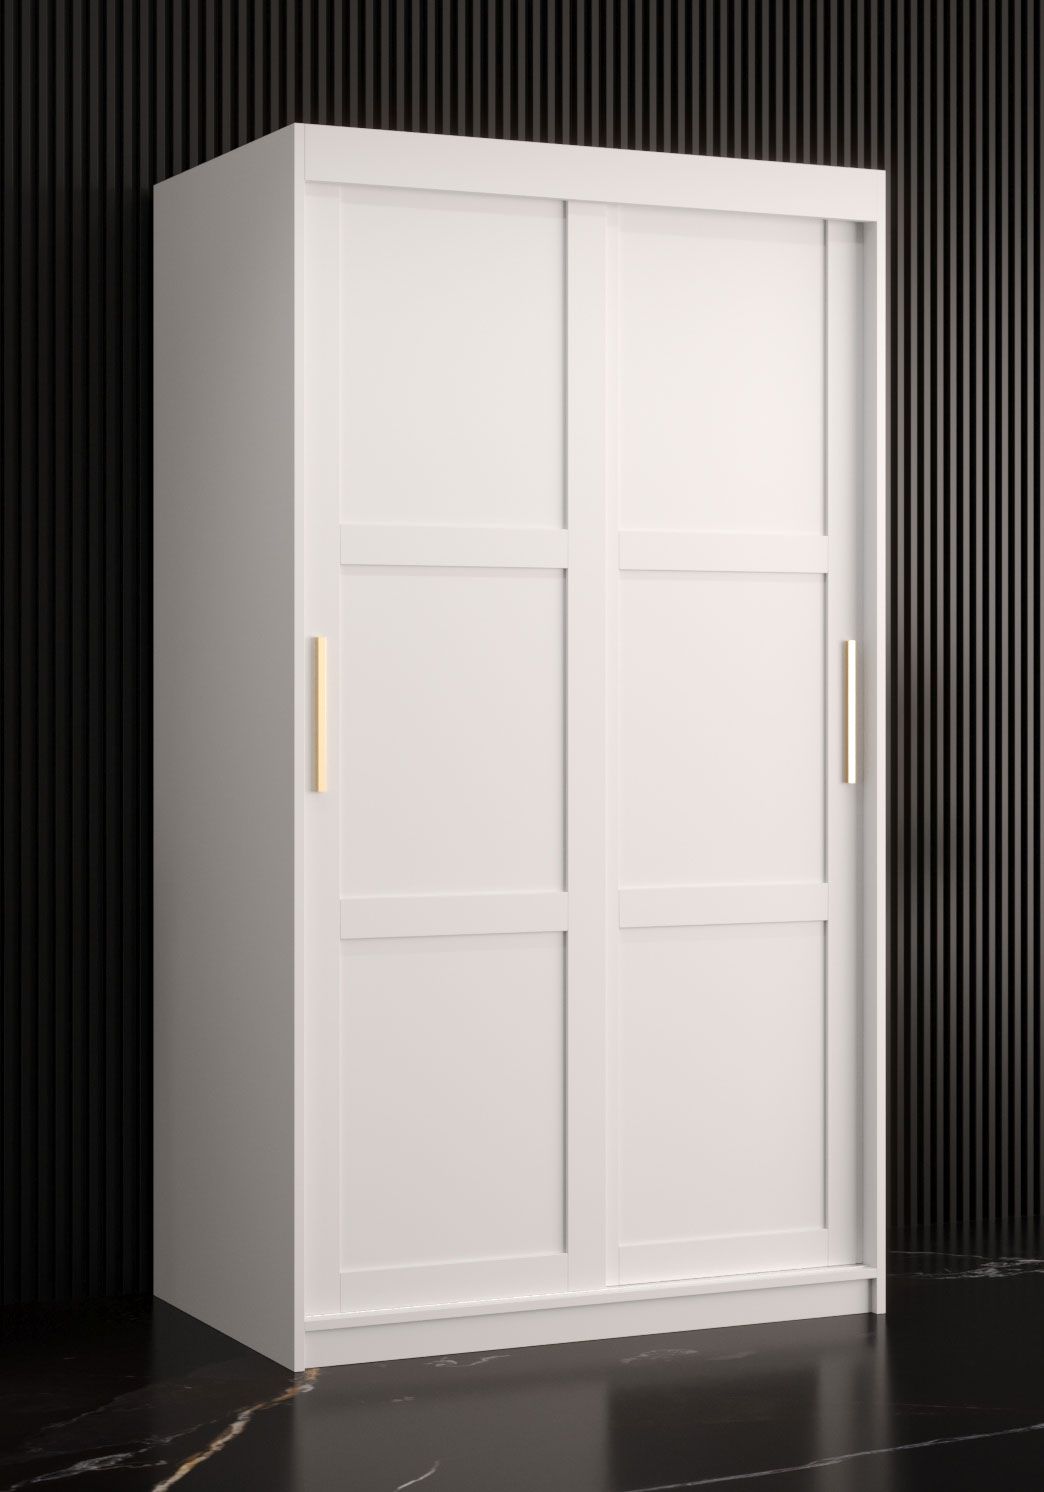 Eenvoudige kledingkast met voldoende opbergruimte Liskamm 01, kleur: mat wit - afmetingen: 200 x 100 x 62 cm (H x B x D), met twee deuren